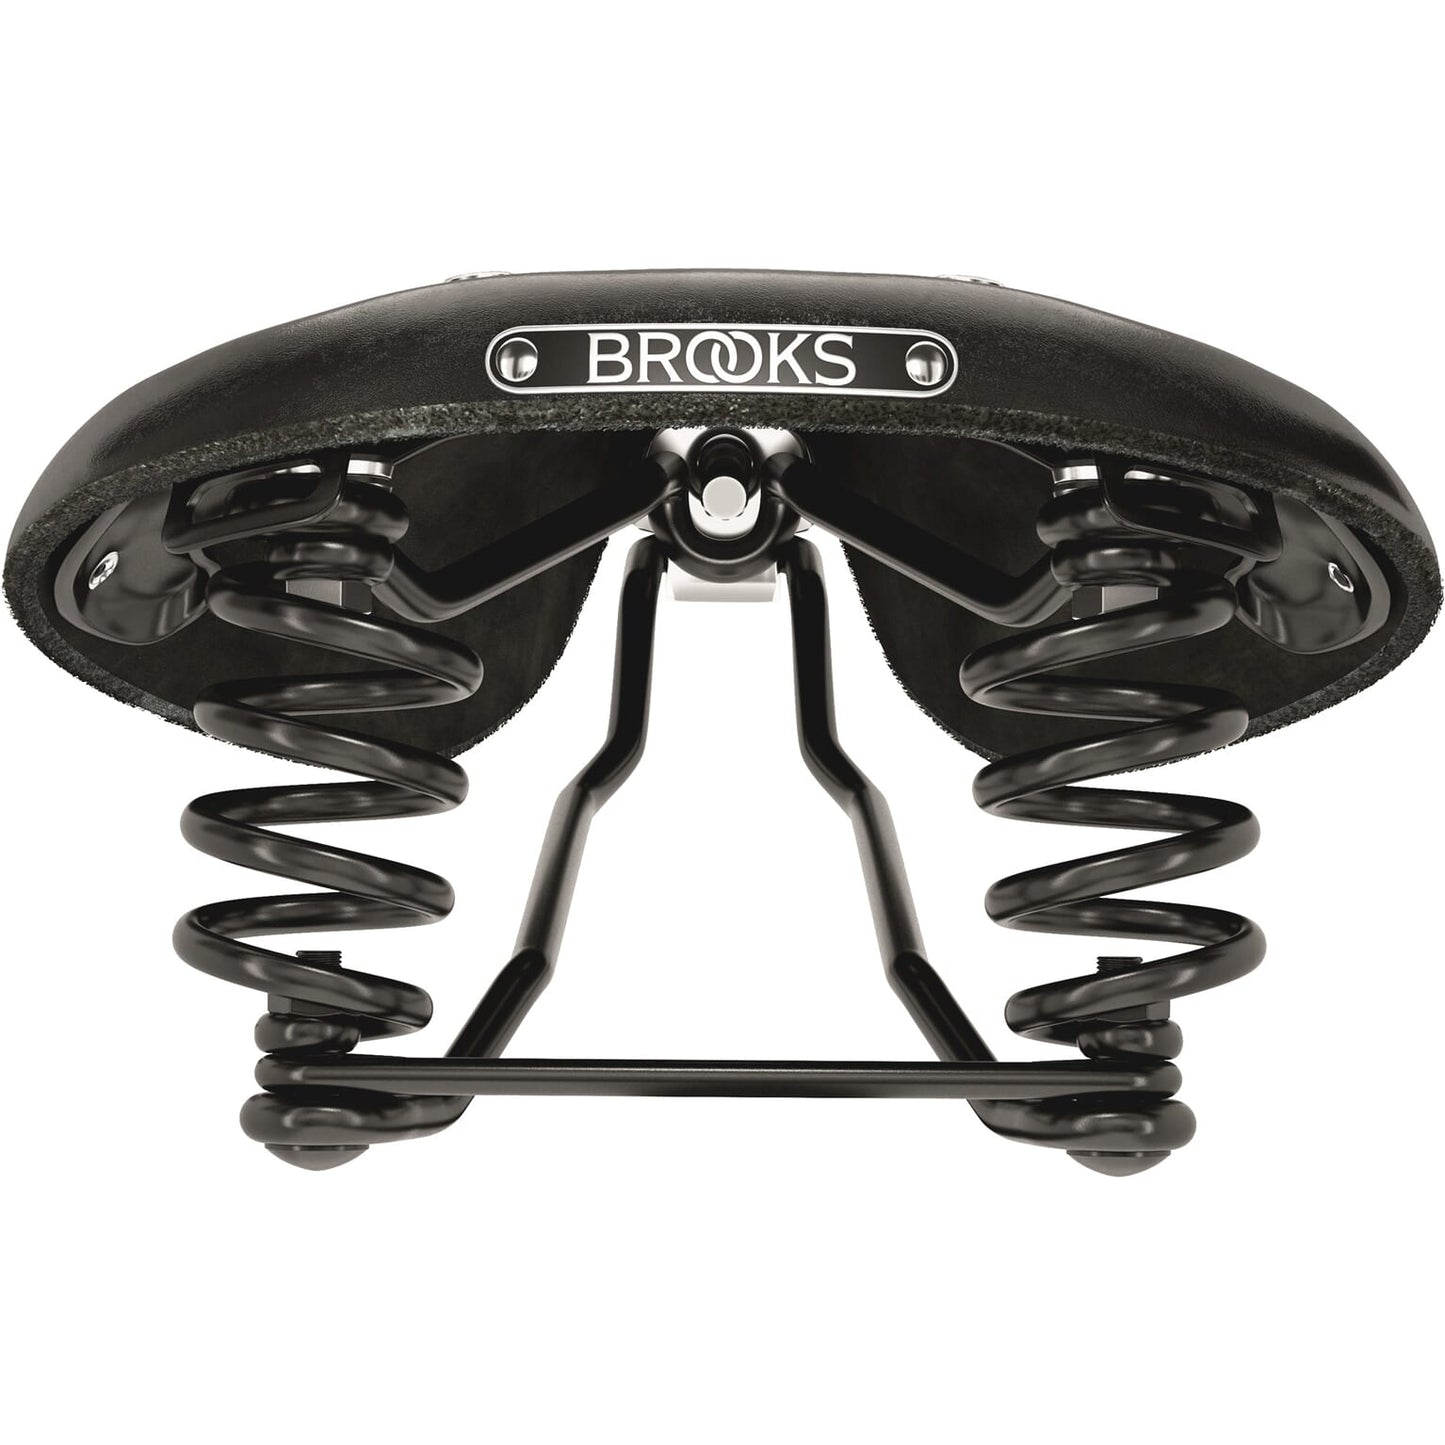 Brooks Saddle B396 Flyer S Ladies Black